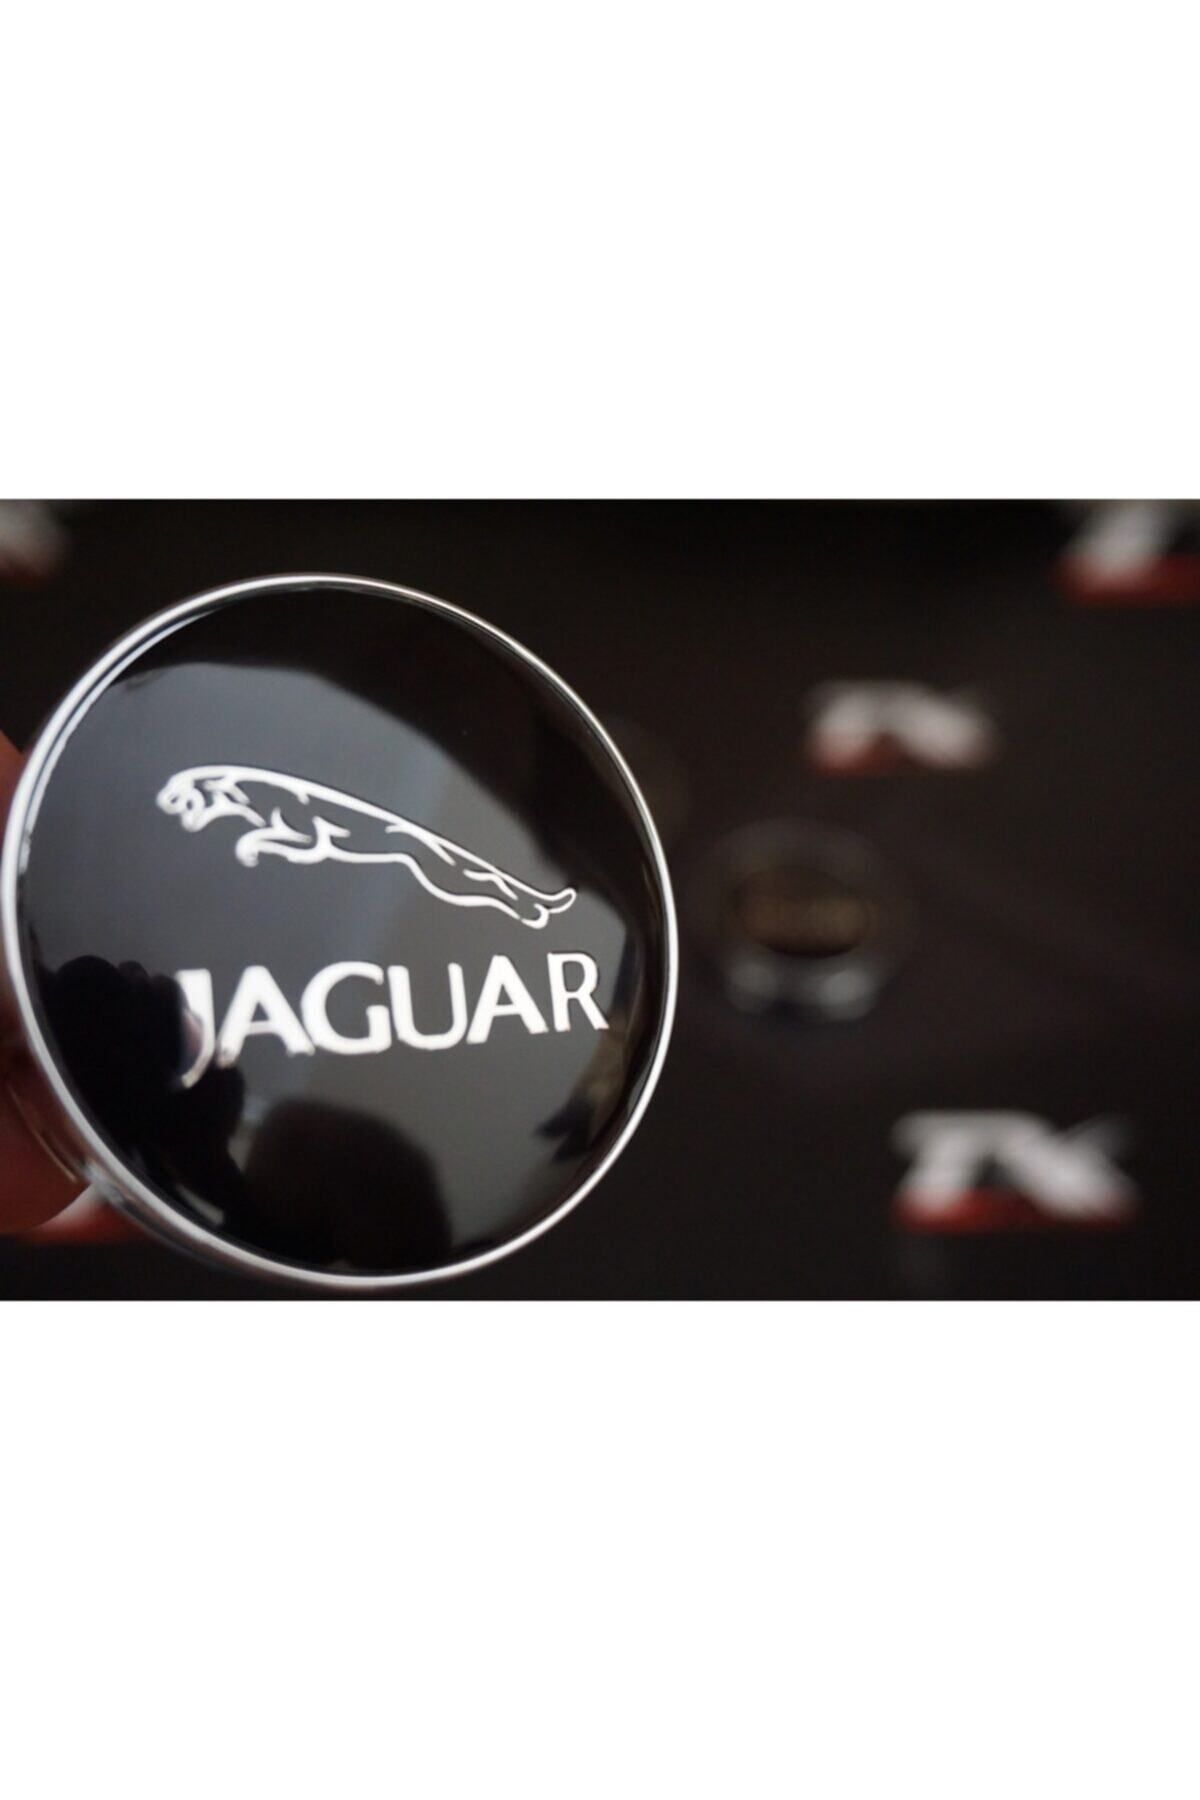 Jaguar Dk Tuning Jant Göbeği Kapak Seti 60mm